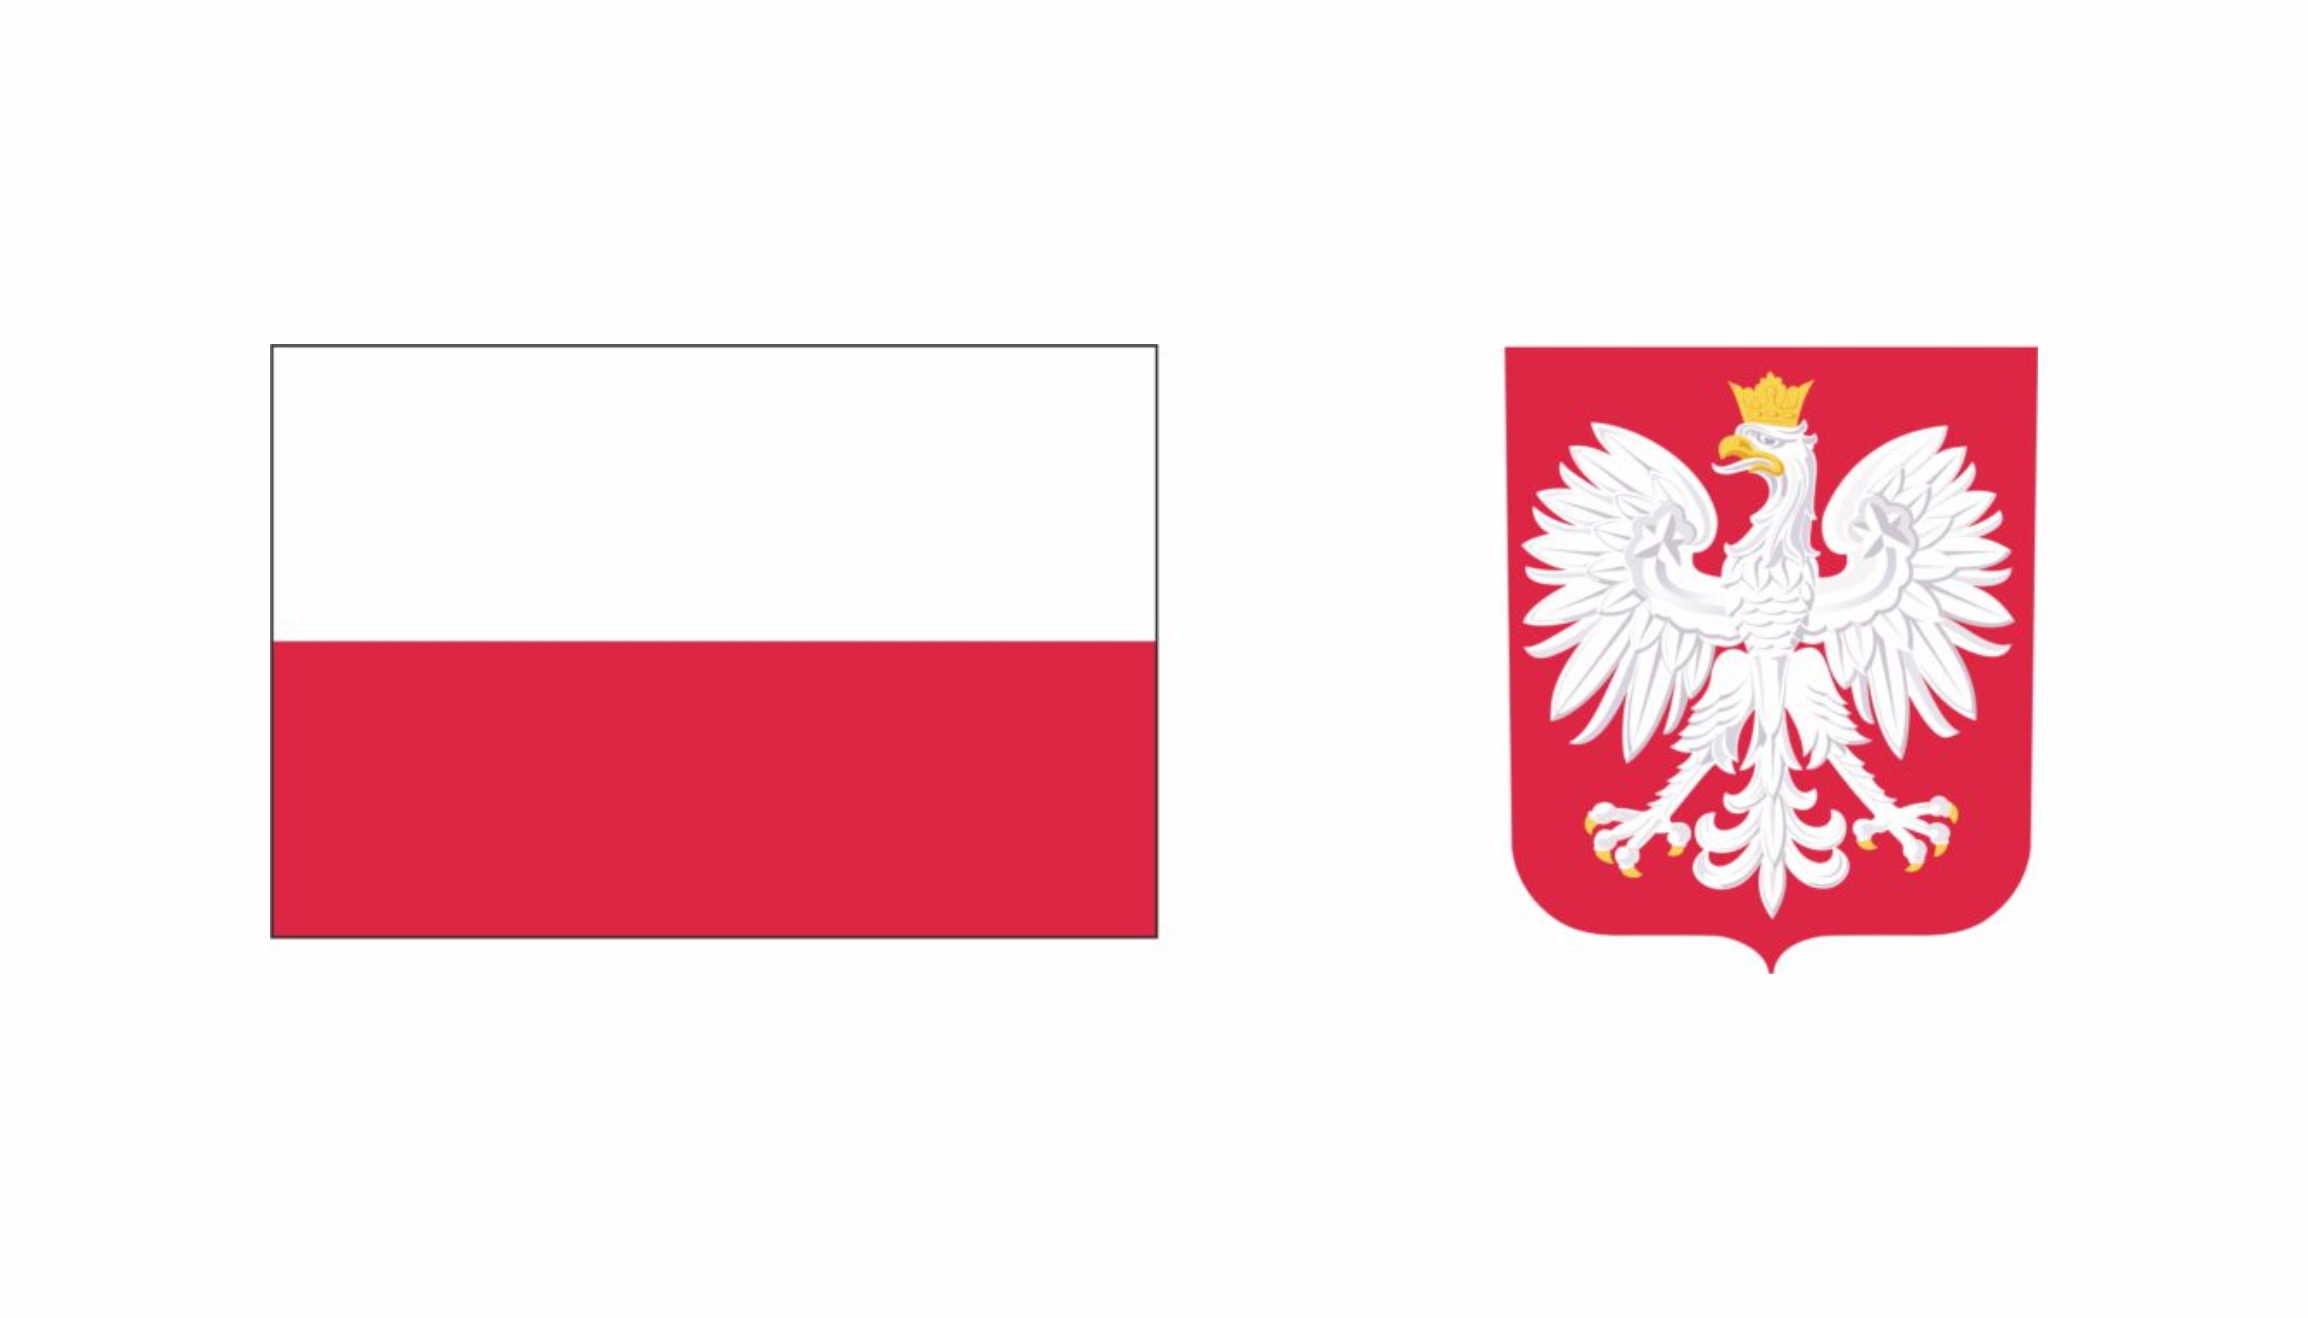 Po lewej Flaga i po prawej godło Rzeczpospolitej Polskiej 